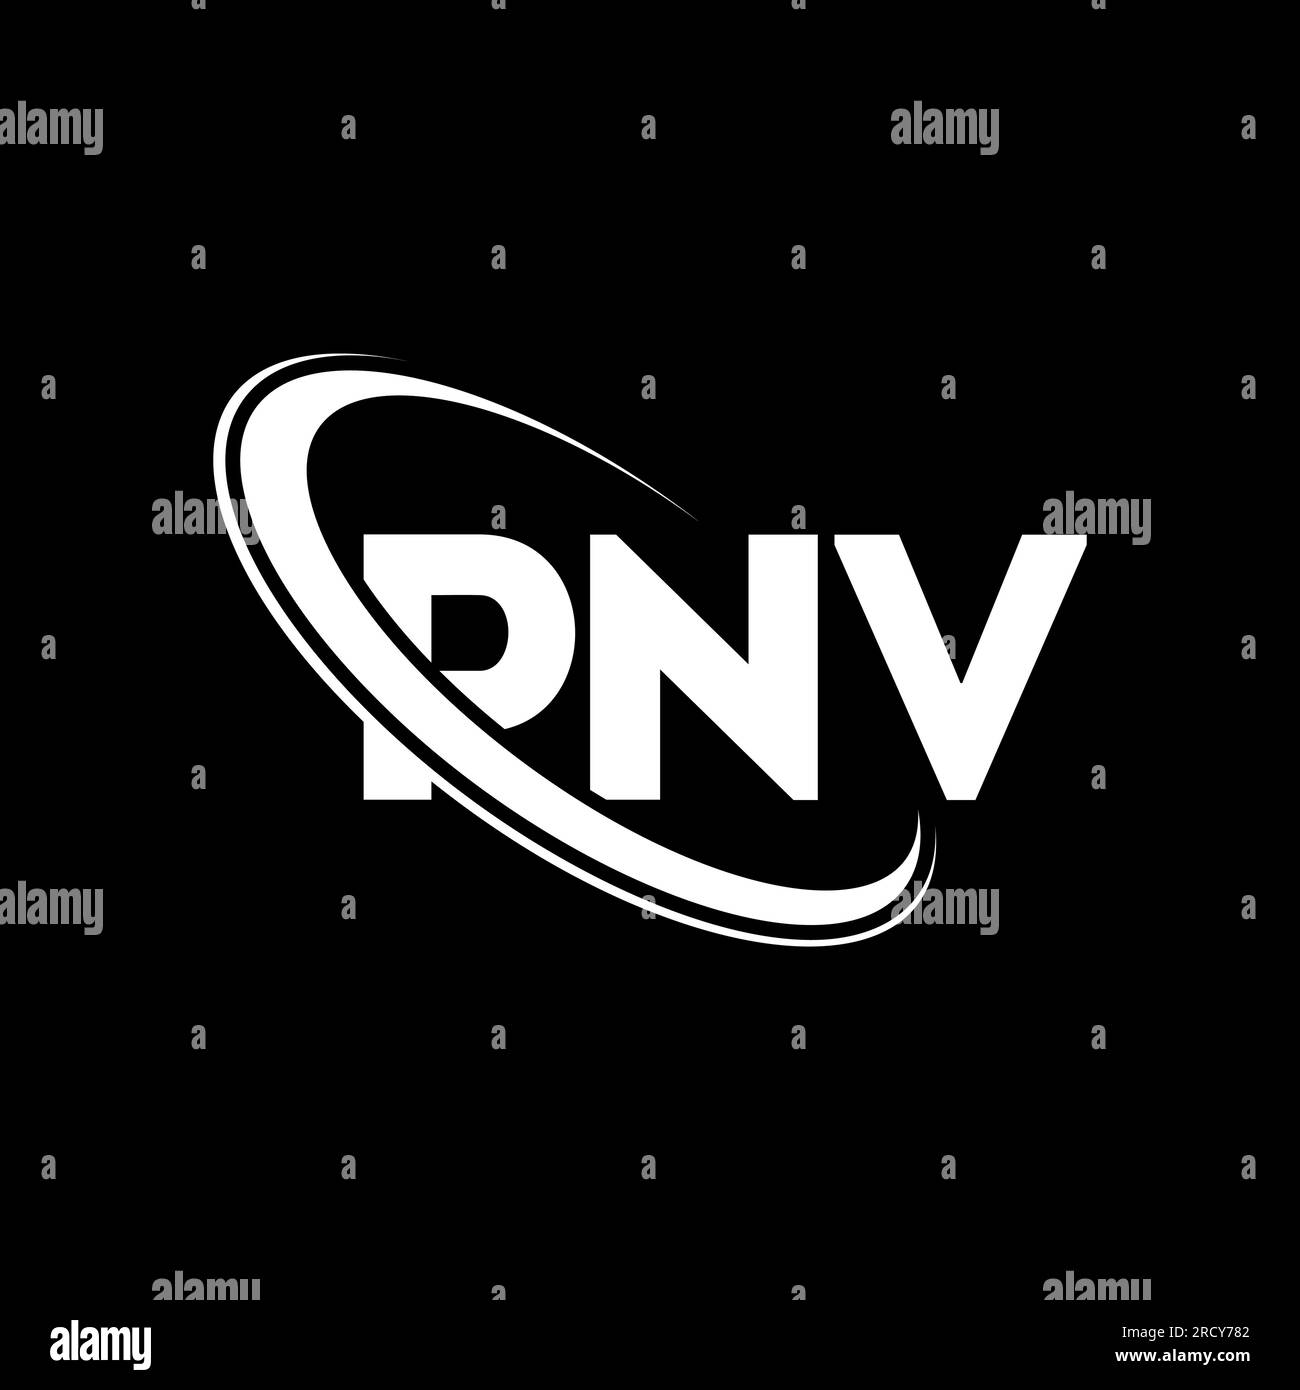 PNV-Logo. PNV-Buchstabe. Logo mit PNV-Buchstaben. Initialen PNV-Logo, verbunden mit einem Kreis und einem Monogramm-Logo in Großbuchstaben. PNV-Typografie für Technologie, Geschäfte Stock Vektor